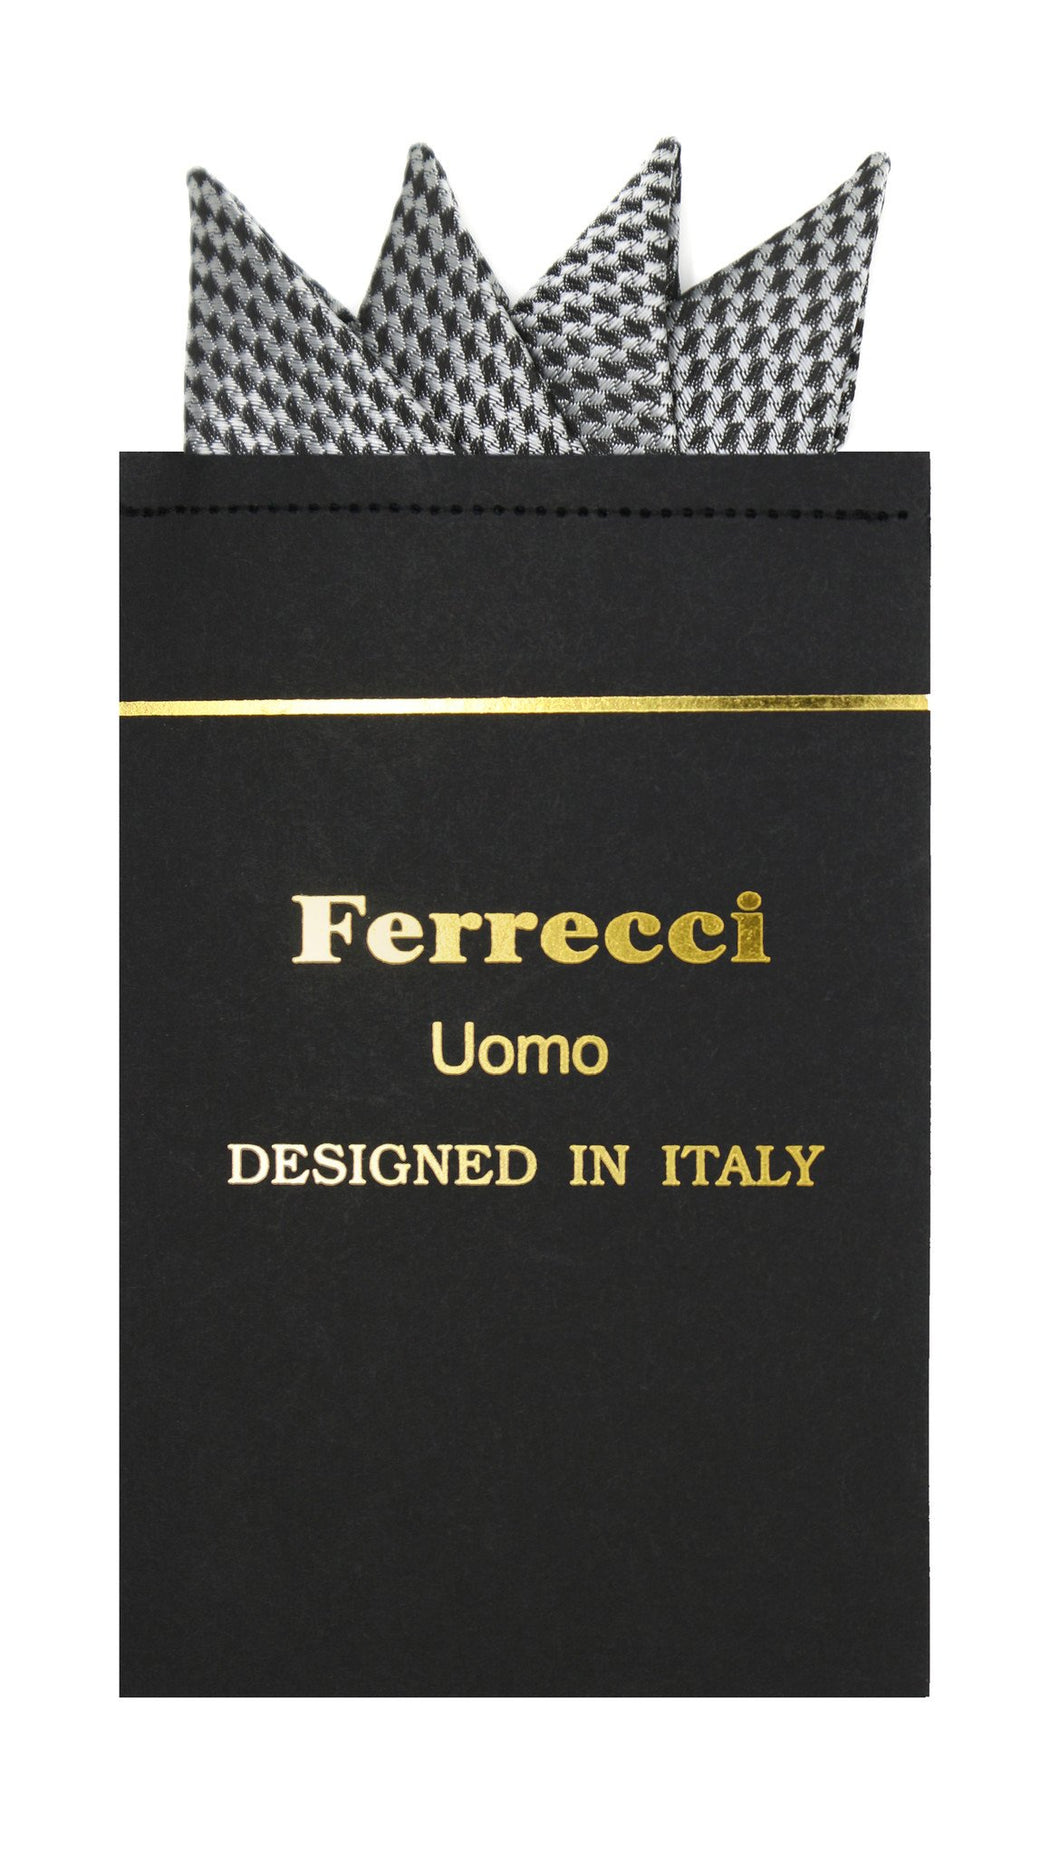 Pre-Folded Microfiber Black Silver Geometric Handkerchief Pocket Square - Ferrecci USA 